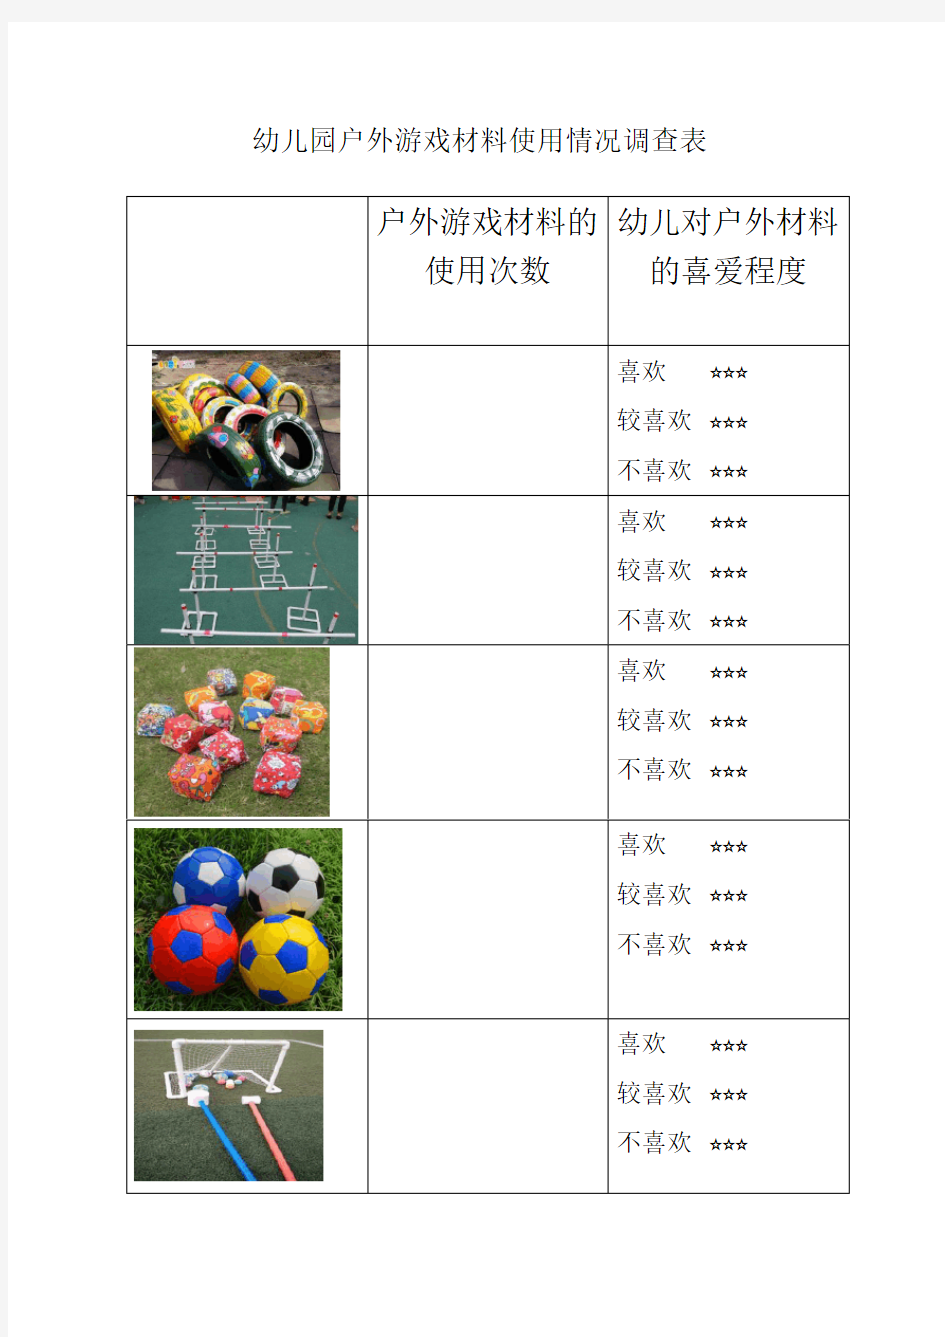 幼儿园户外游戏材料使用情况调查表